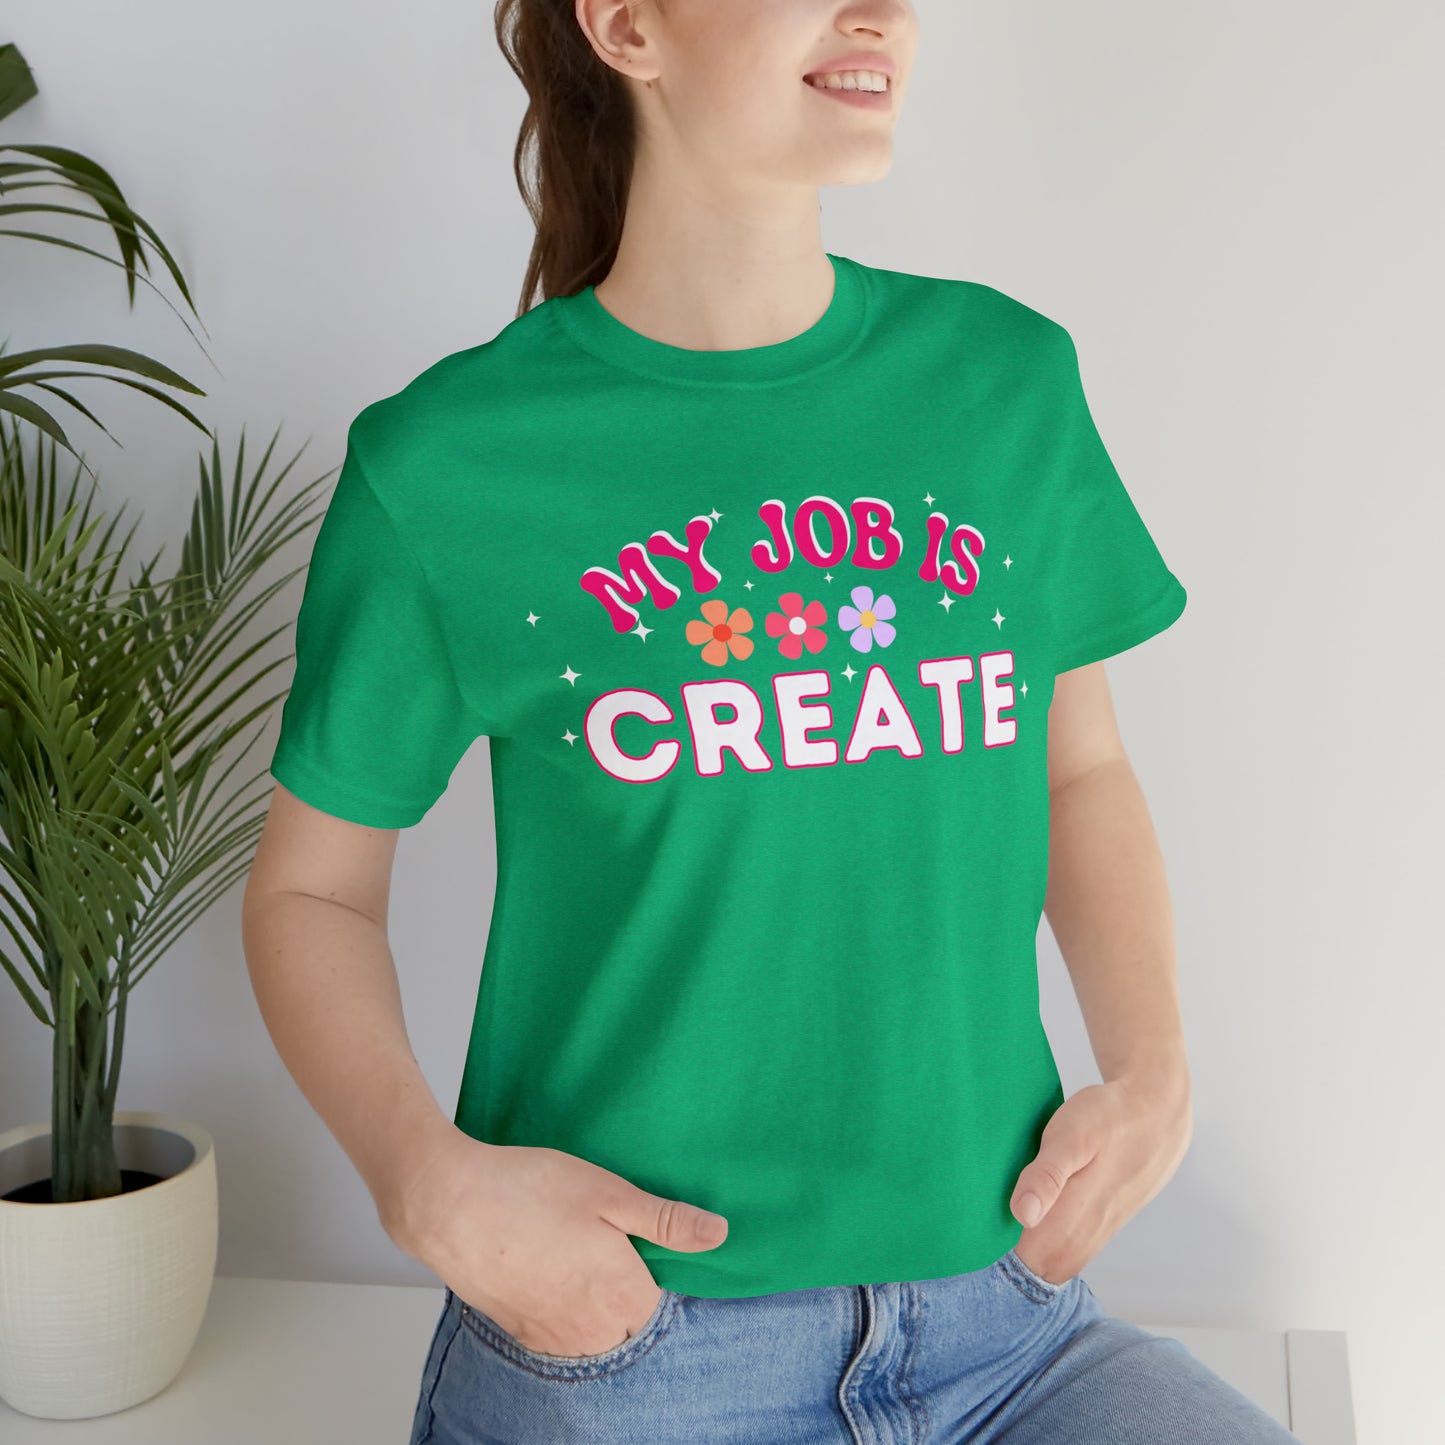 My Job is Create Shirt Artist Shirt, Content Creator Shirt Blogger Shirt Vlogger Shirt, Youtuber shirt